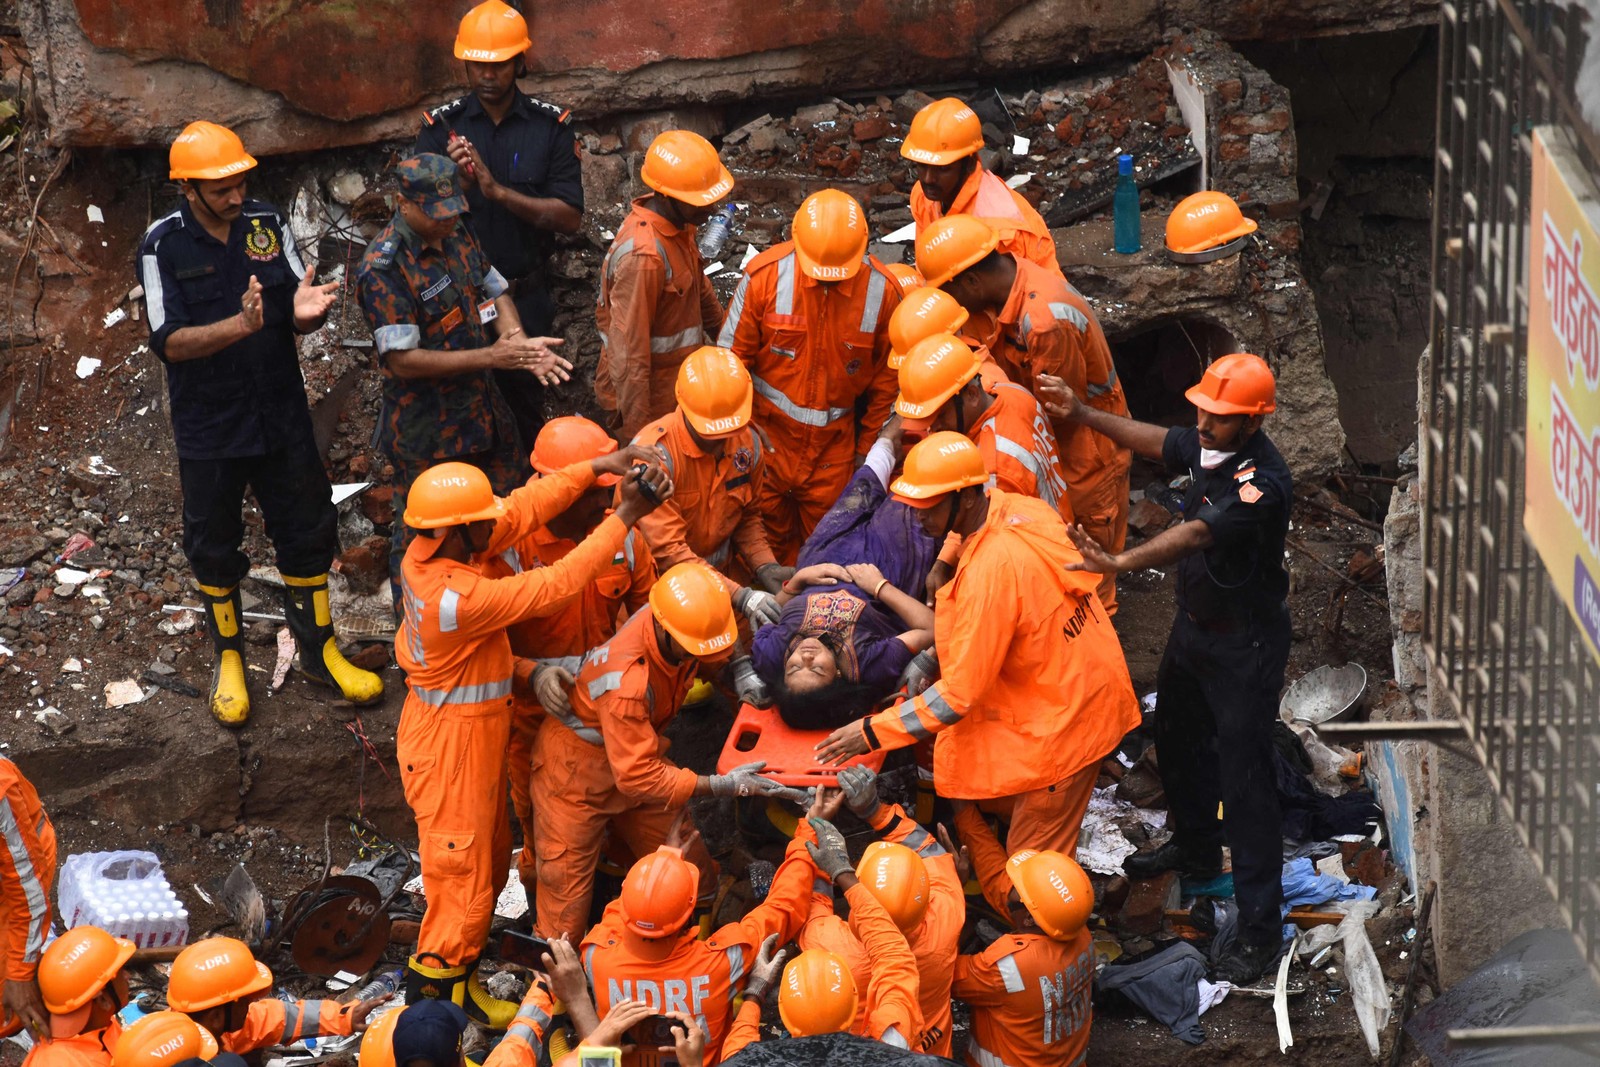 Equipes de resgate retiram sobrevivente dos escombros de um prédio que desmoronou, em Mumbai, na Índia  — Foto: IMTIYAZ SHAIKH / AFP